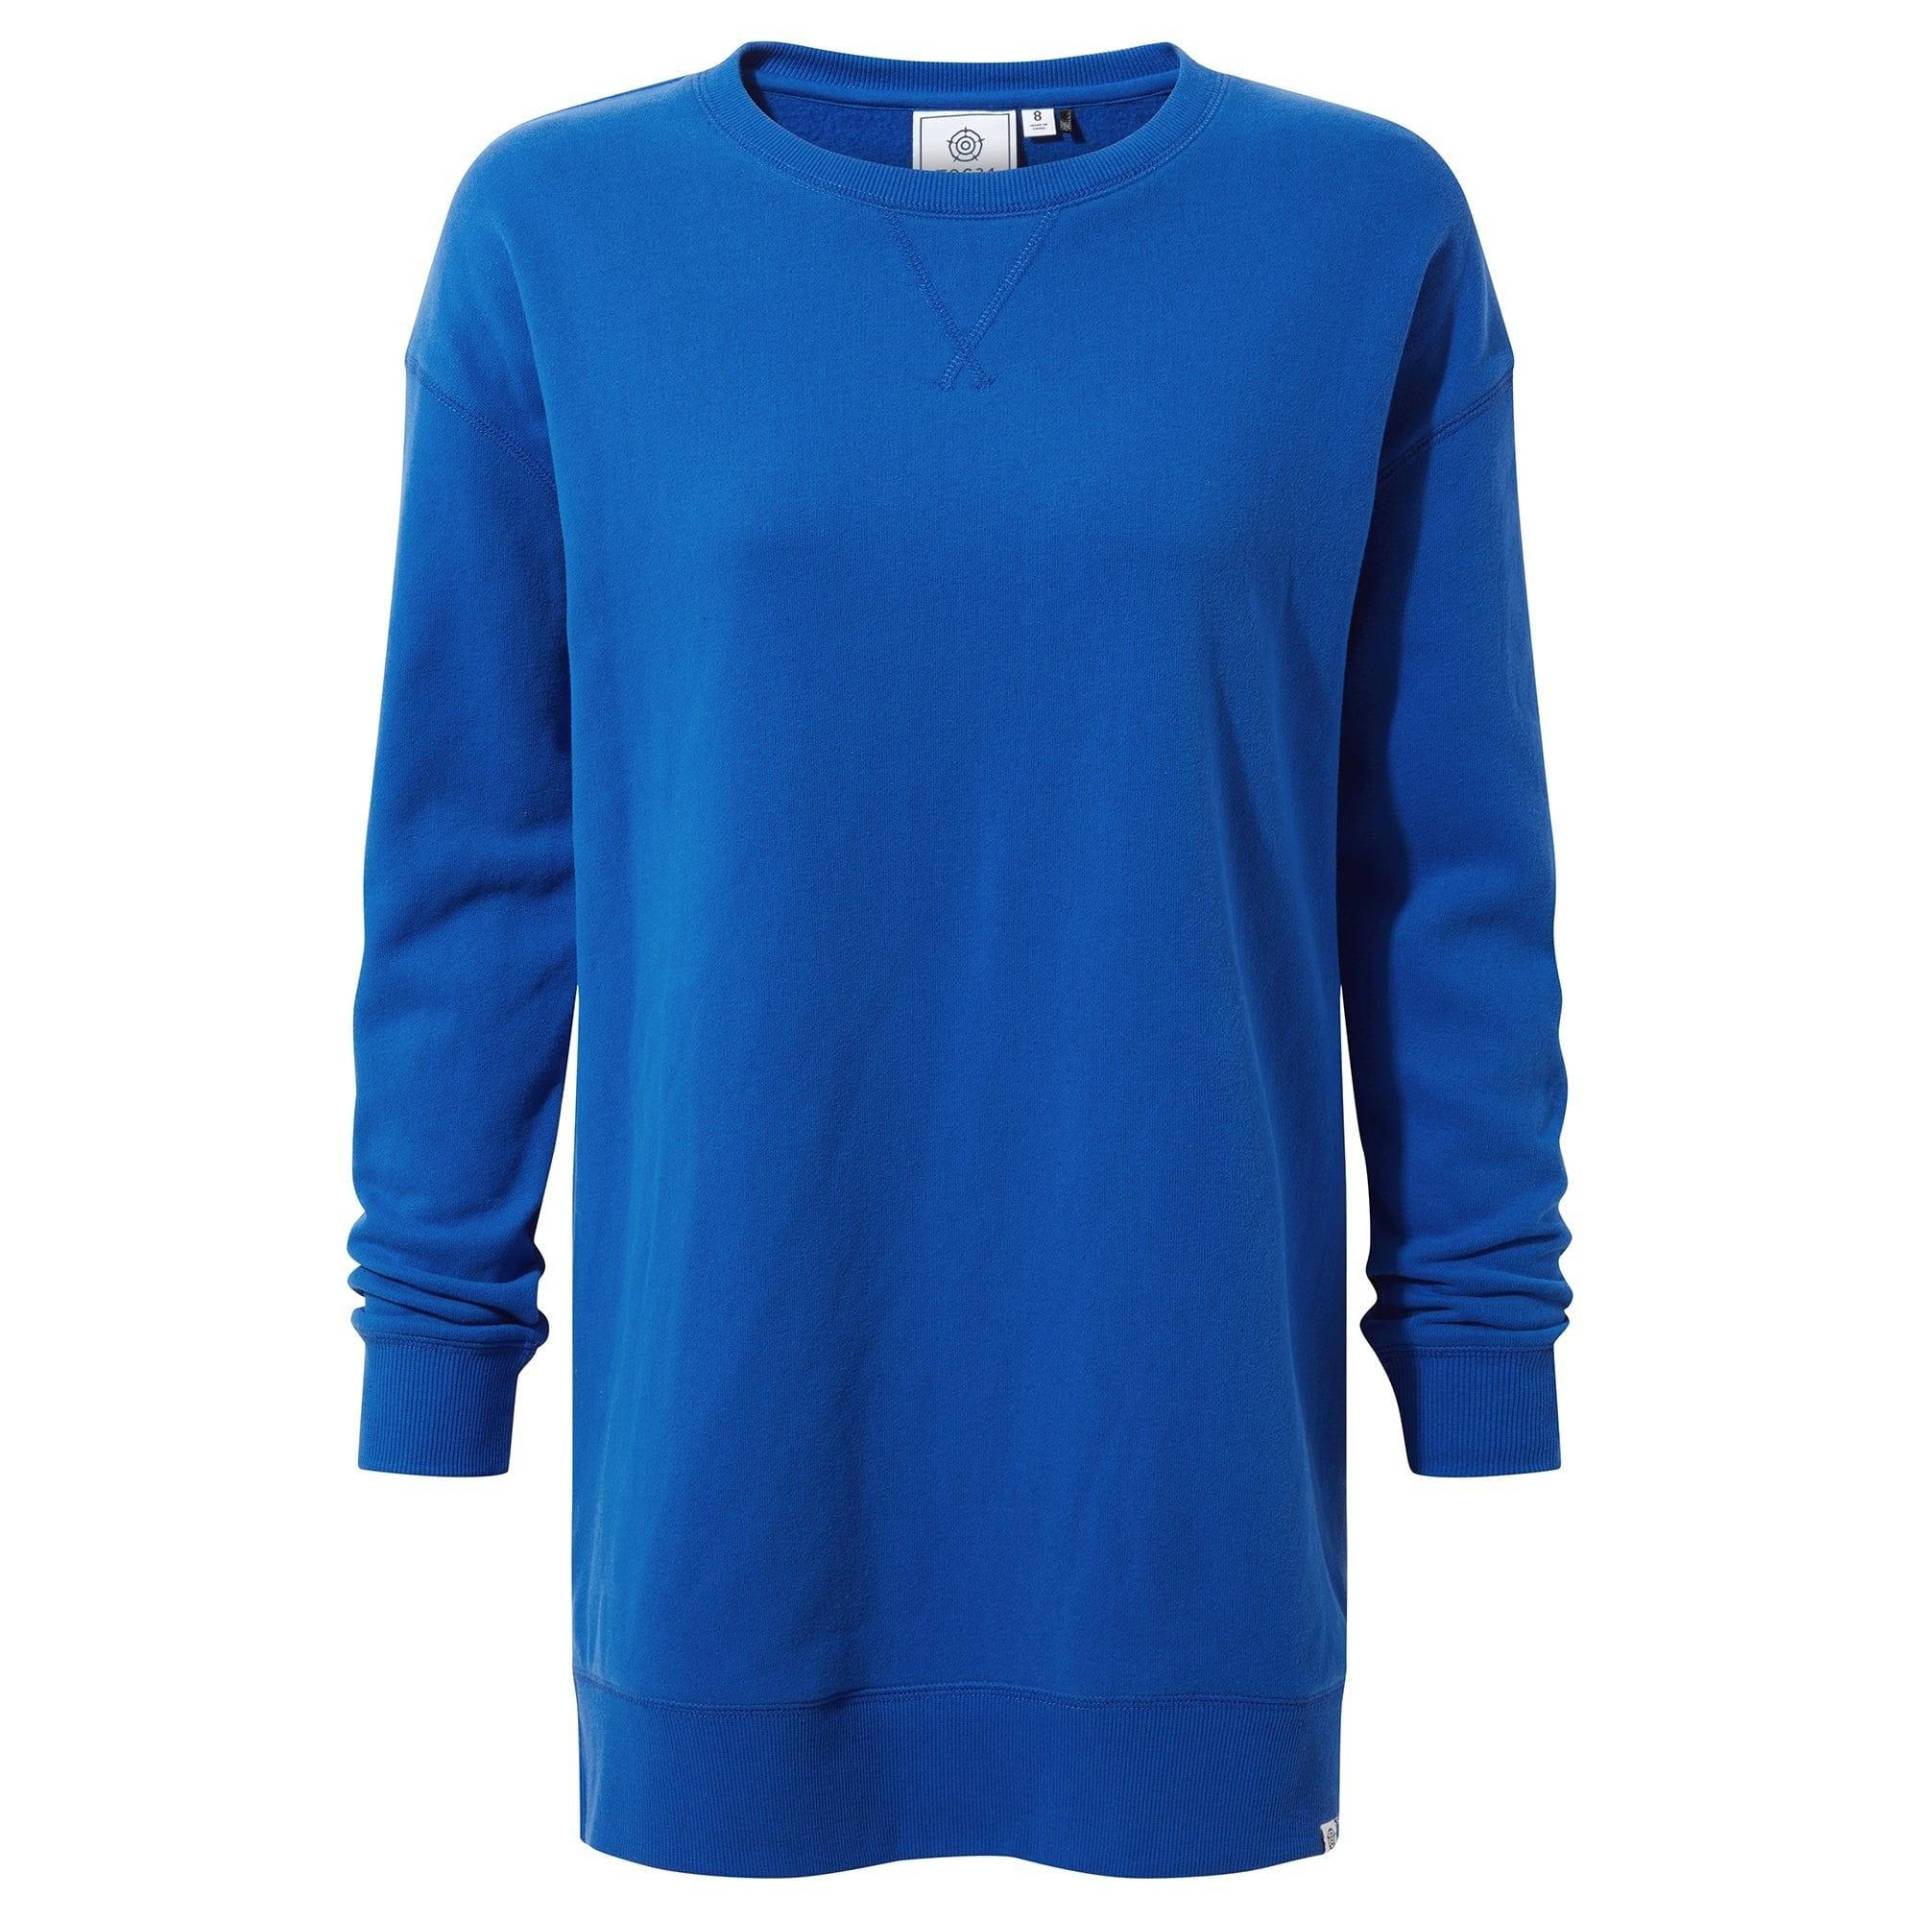 Michelle Sweatshirt Damen Bleached Blau 36 von Tog24